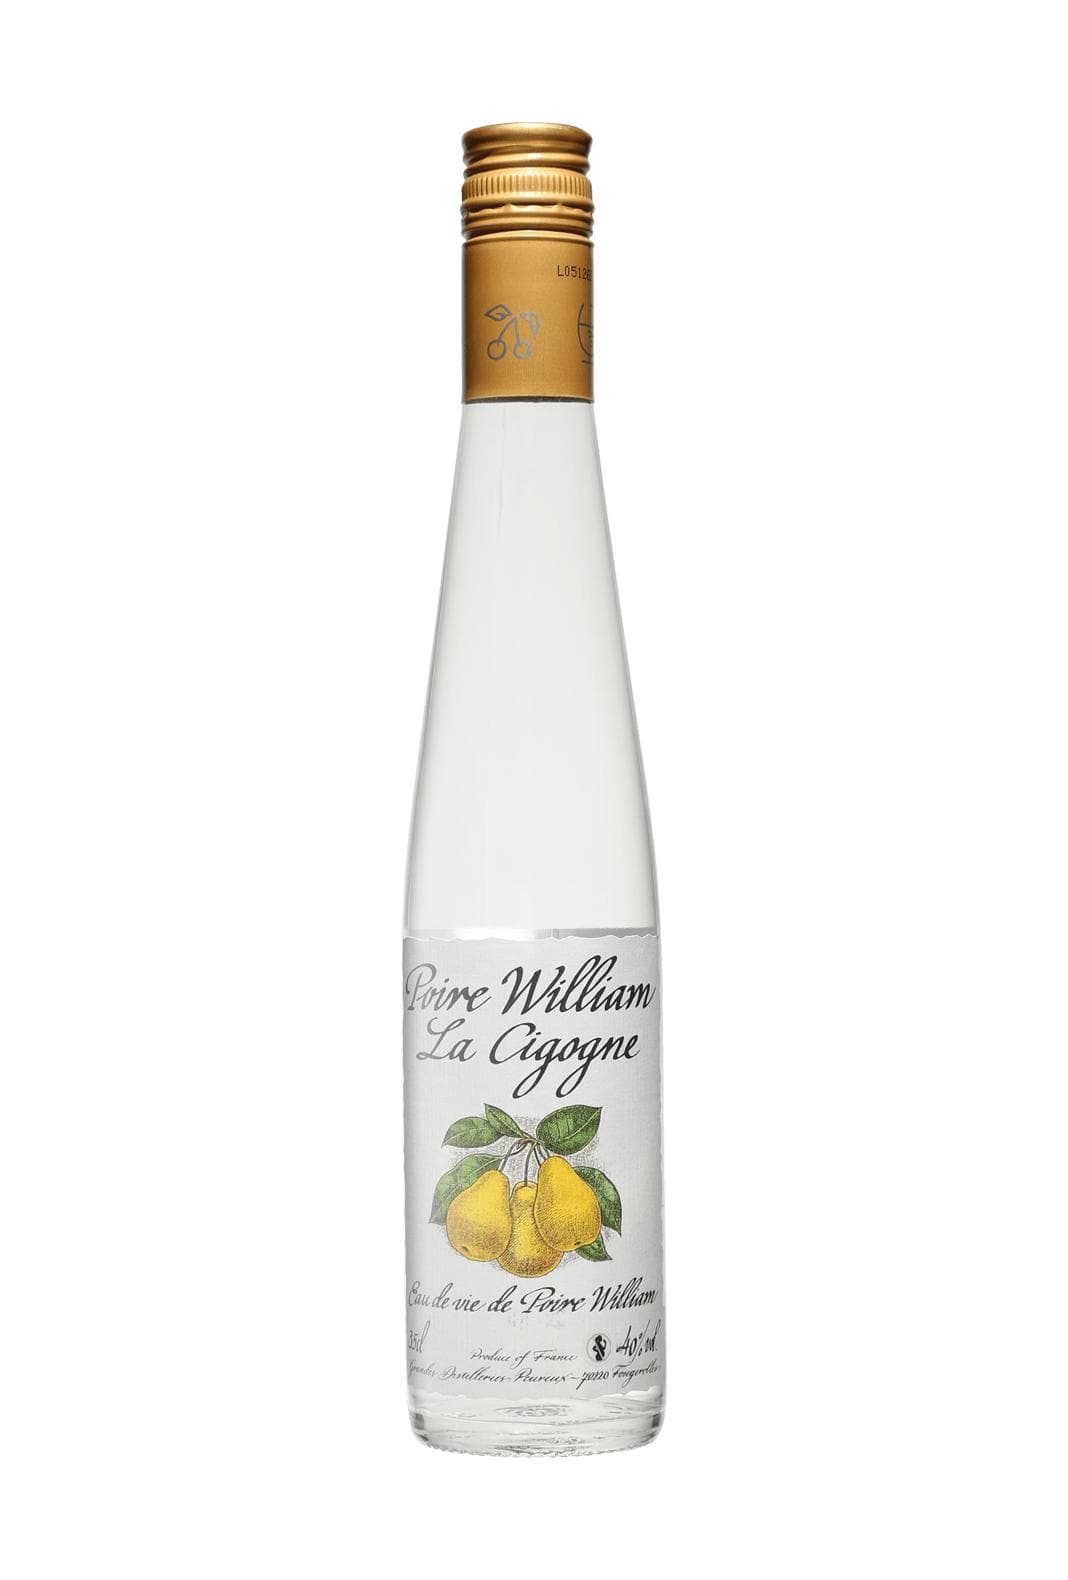 Peureux 'La Cigogne' Eau de Vie Poire William (Williams Pear spirit) 40% 350ml | Liquor & Spirits | Shop online at Spirits of France